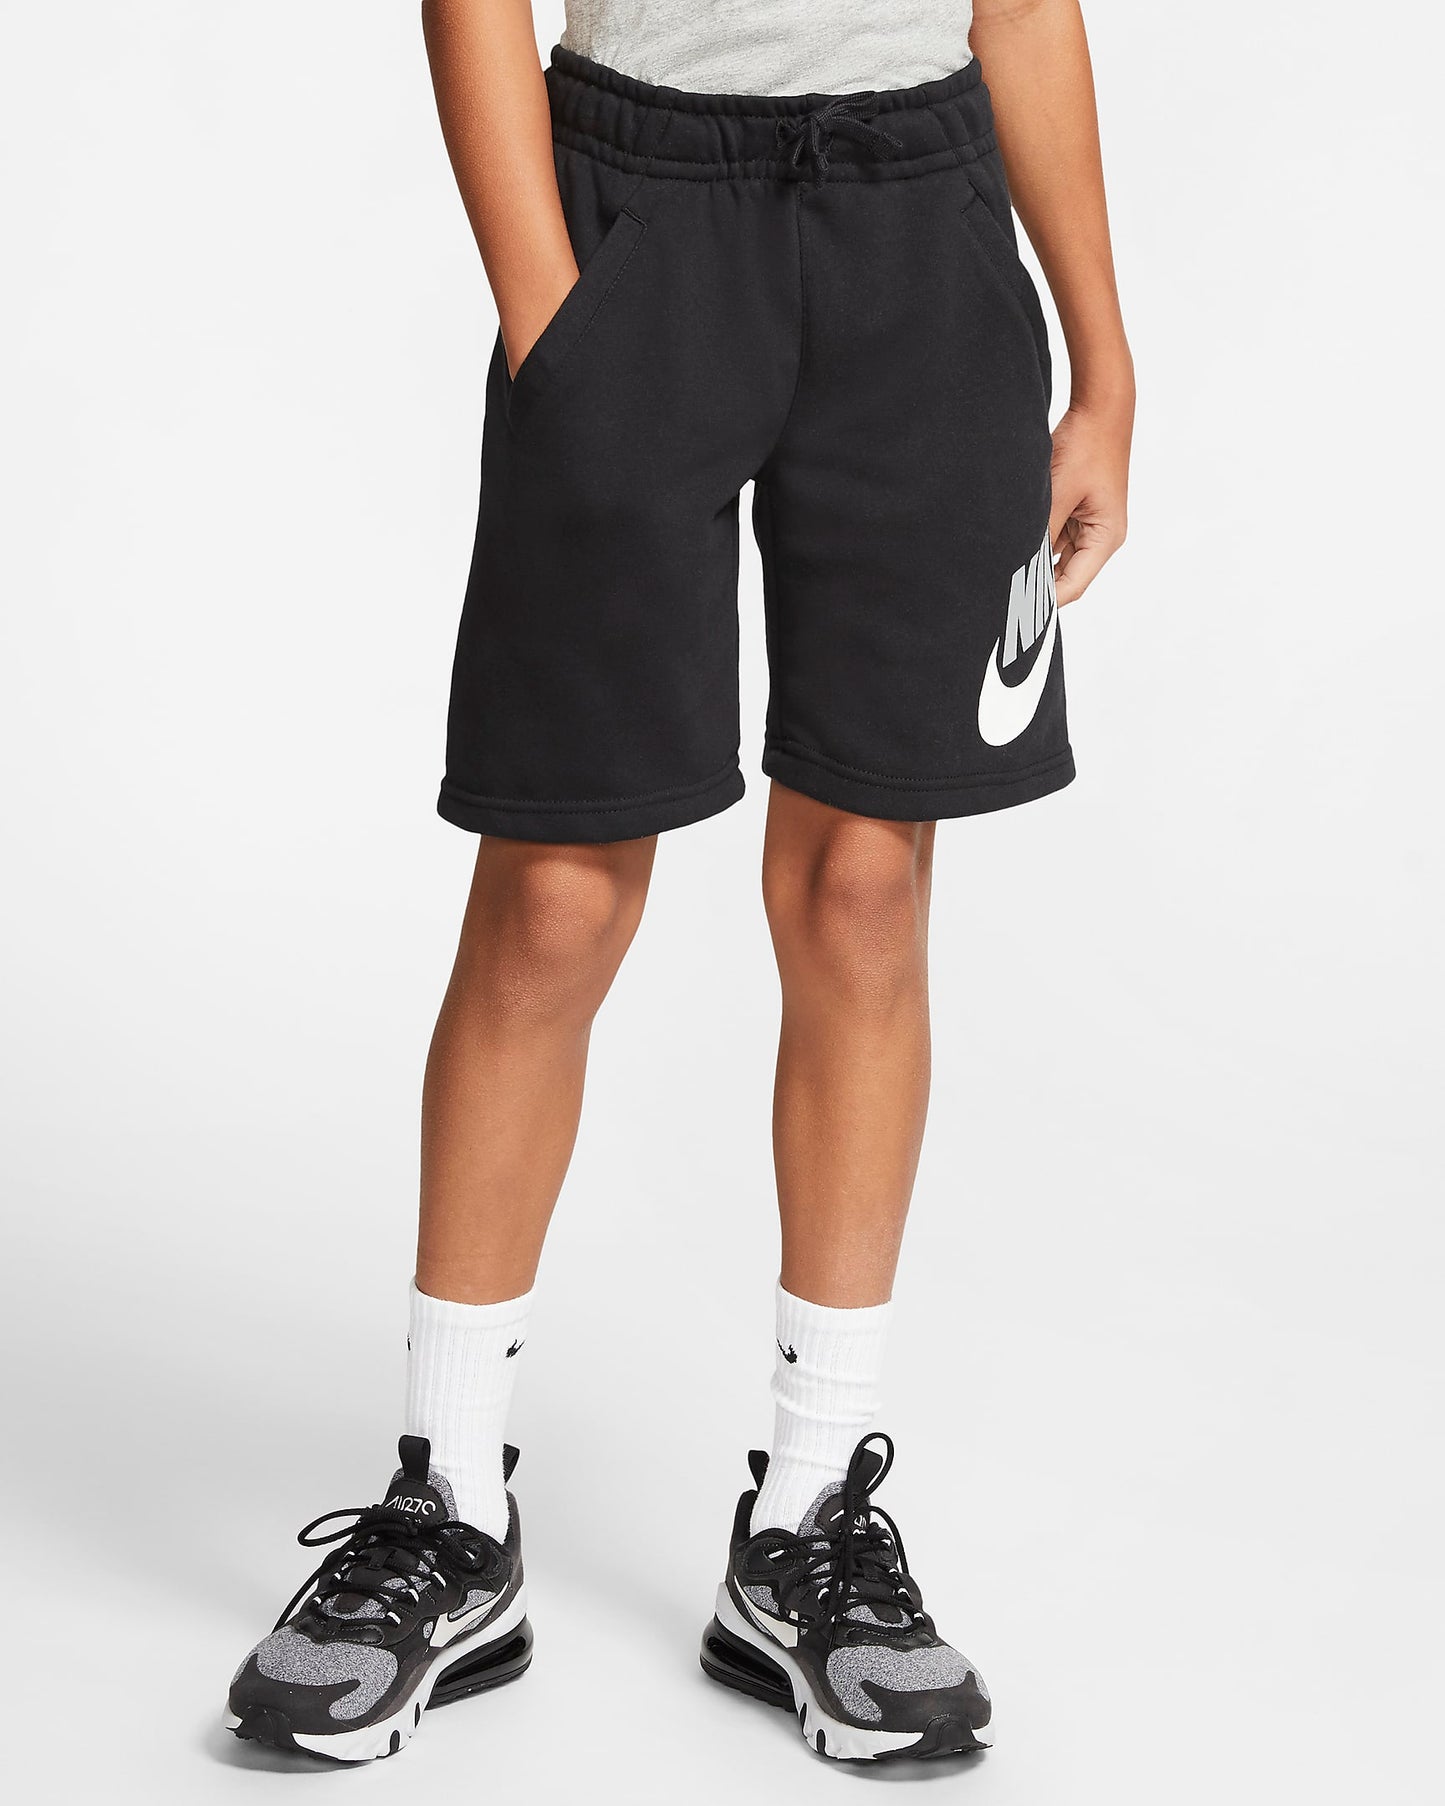 -Nike Youth Fleece Club Shorts - (CK0509 010) - SH3 - 6